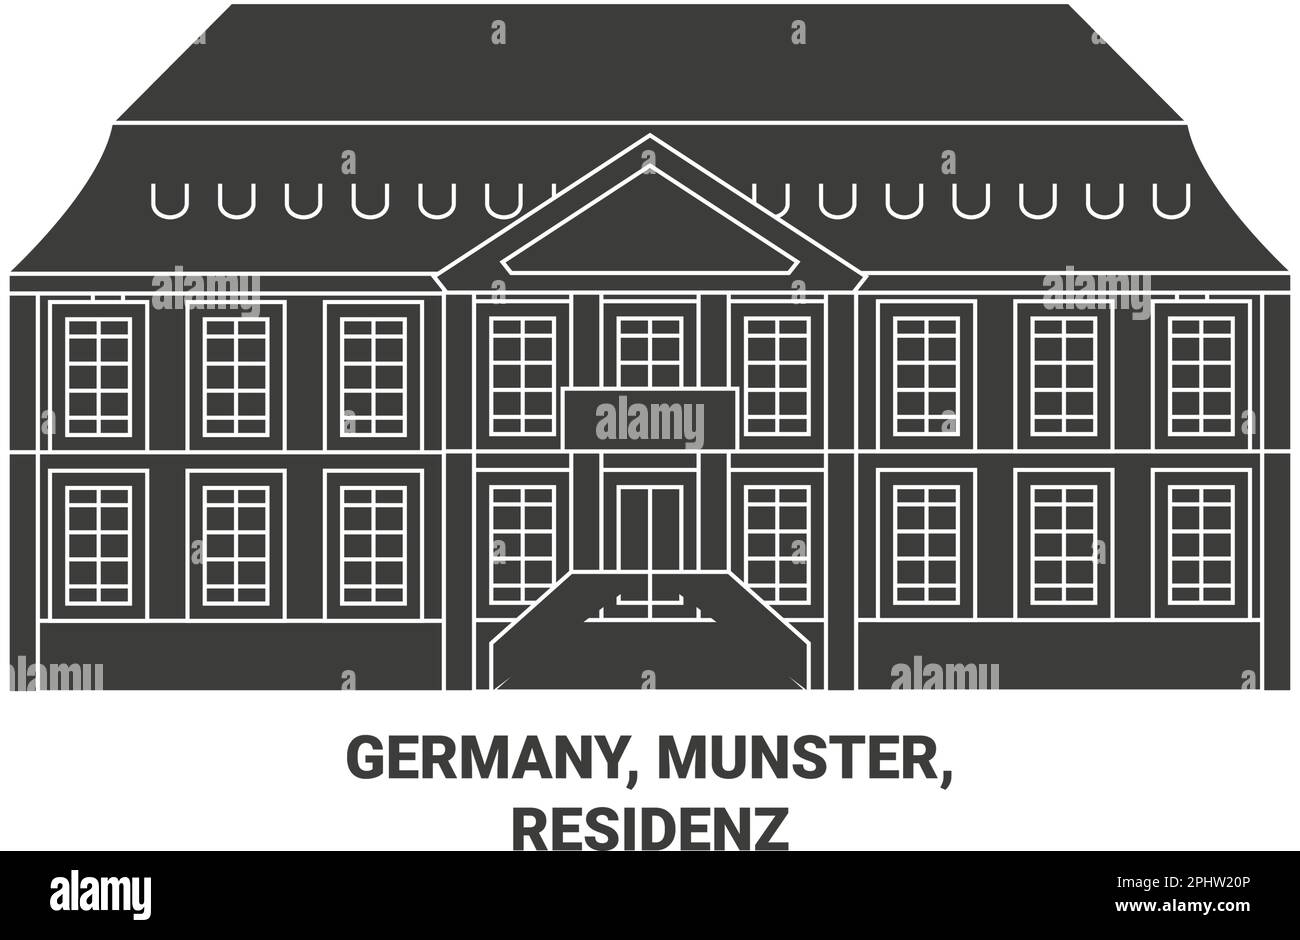 Germany, Munster,Residenz travel landmark vector illustration Stock Vector